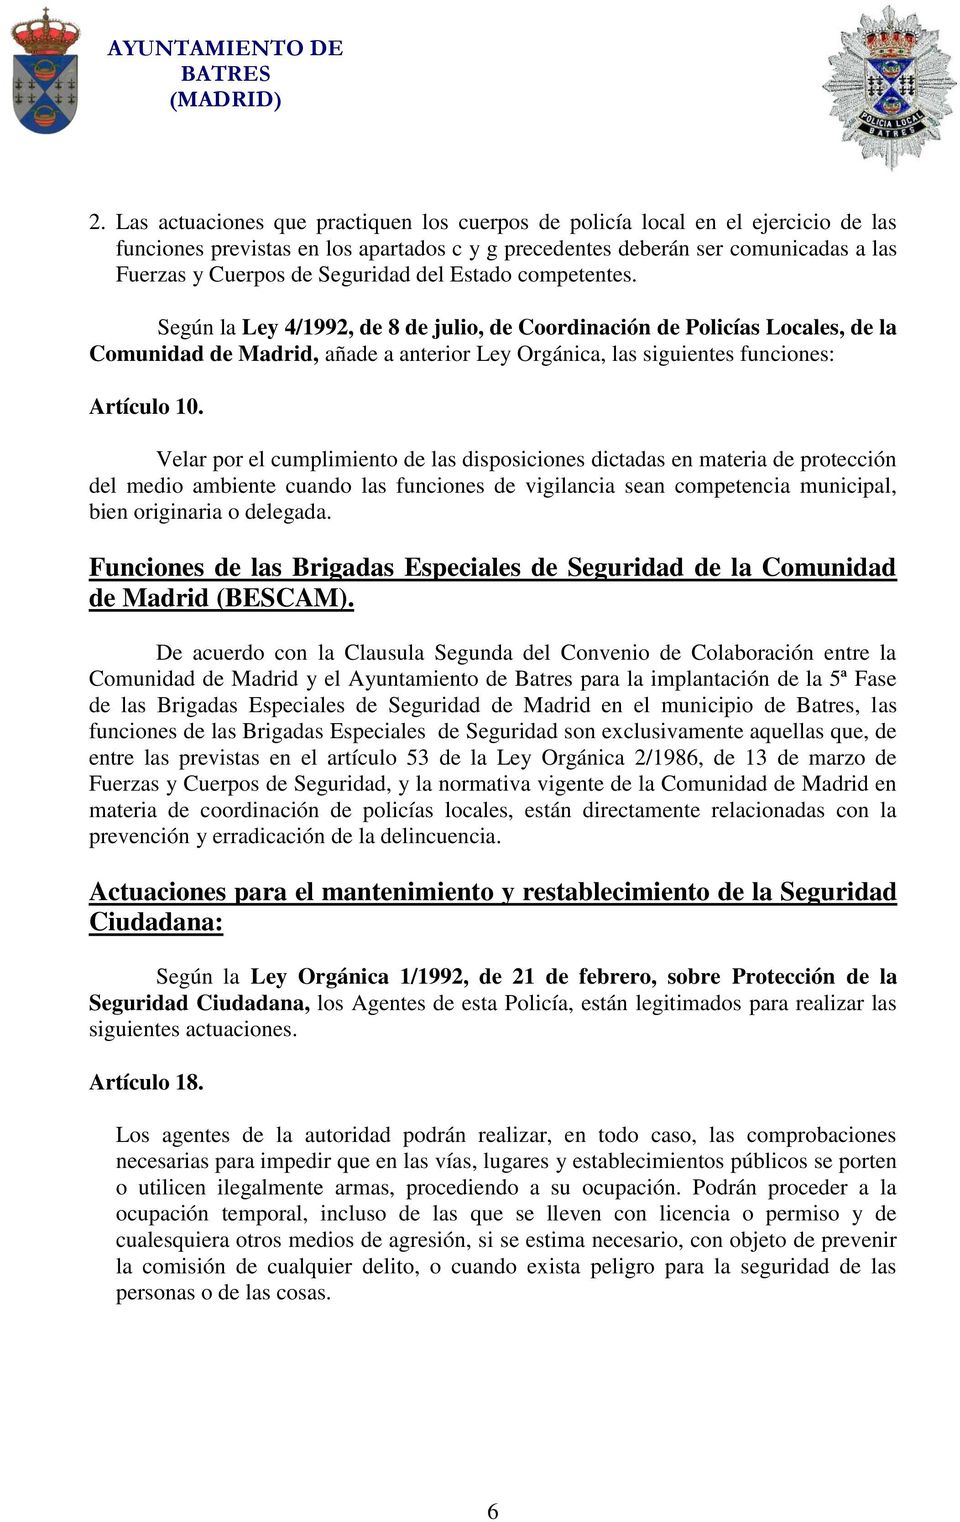 Según la Ley 4/1992, de 8 de julio, de Coordinación de Policías Locales, de la Comunidad de Madrid, añade a anterior Ley Orgánica, las siguientes funciones: Artículo 10.